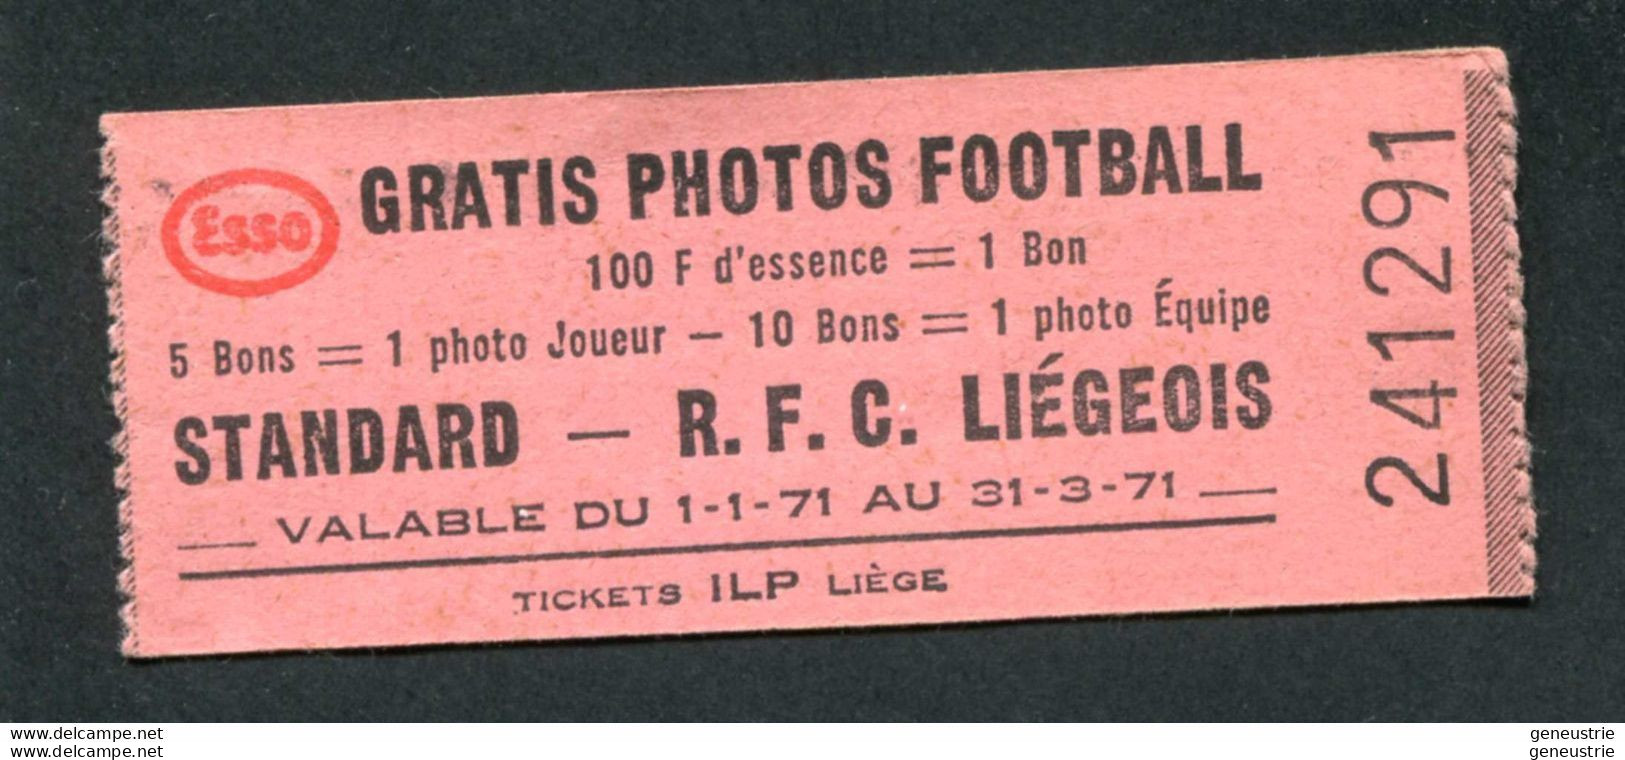 Jeton-carton De Nécessité - Ticket-prime 1971 "Esso Gratis Photos Football - R.F.C. Liégeois - ILP à Liège" - Monedas / De Necesidad